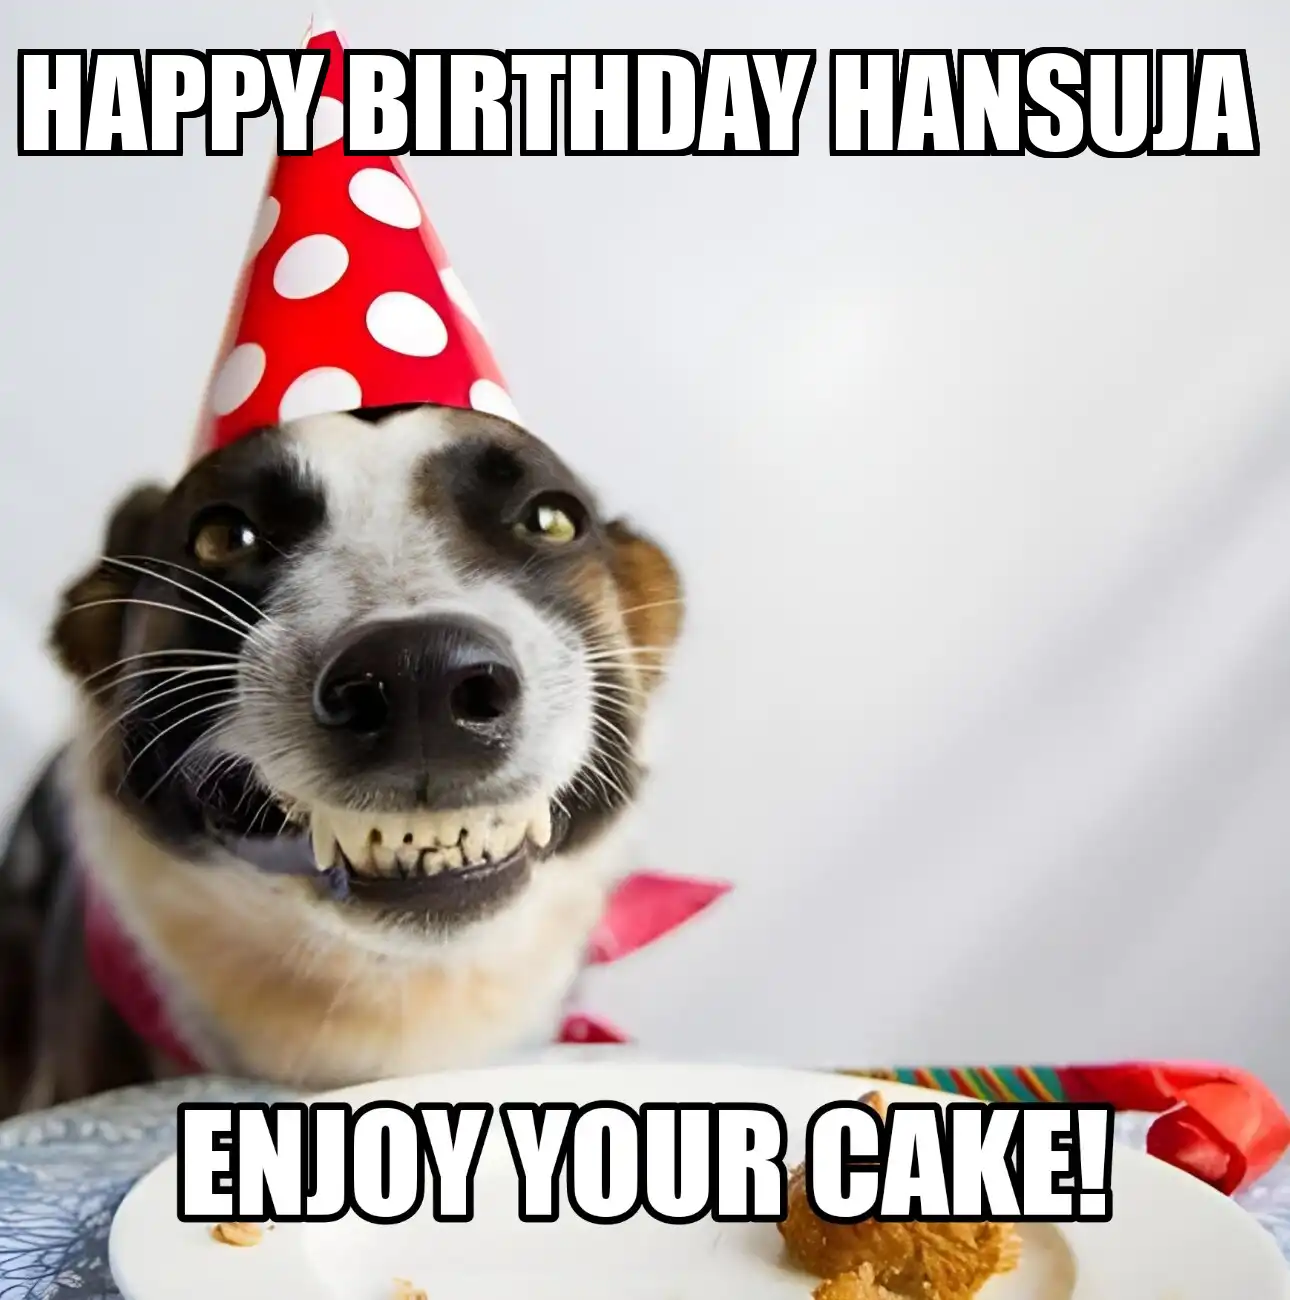 Happy Birthday Hansuja Enjoy Your Cake Dog Meme